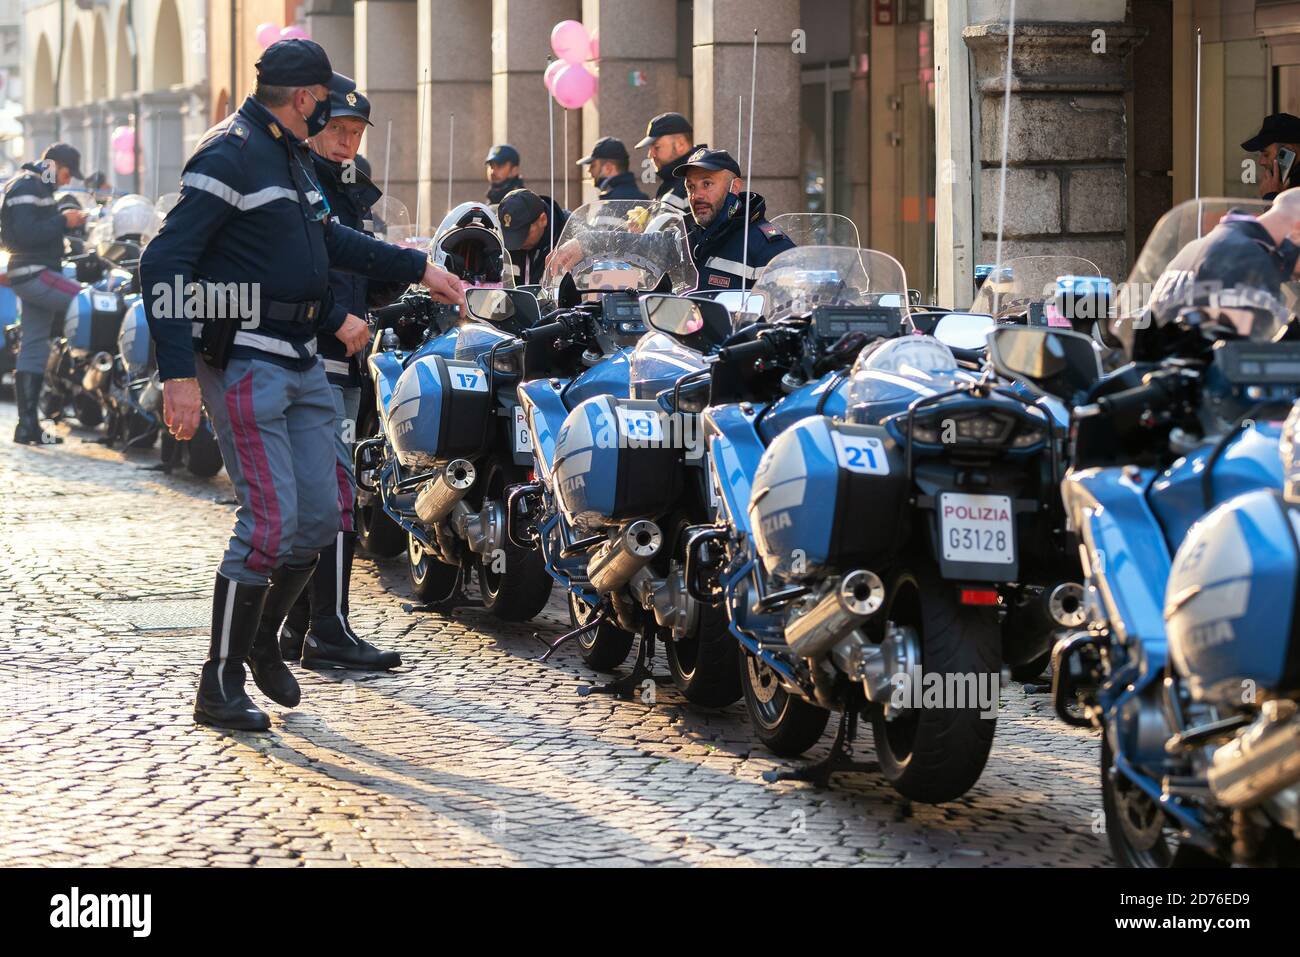 Grupo de policías italianos, motos y policías en una calle adoquinada. Udine, Italia. Foto de stock